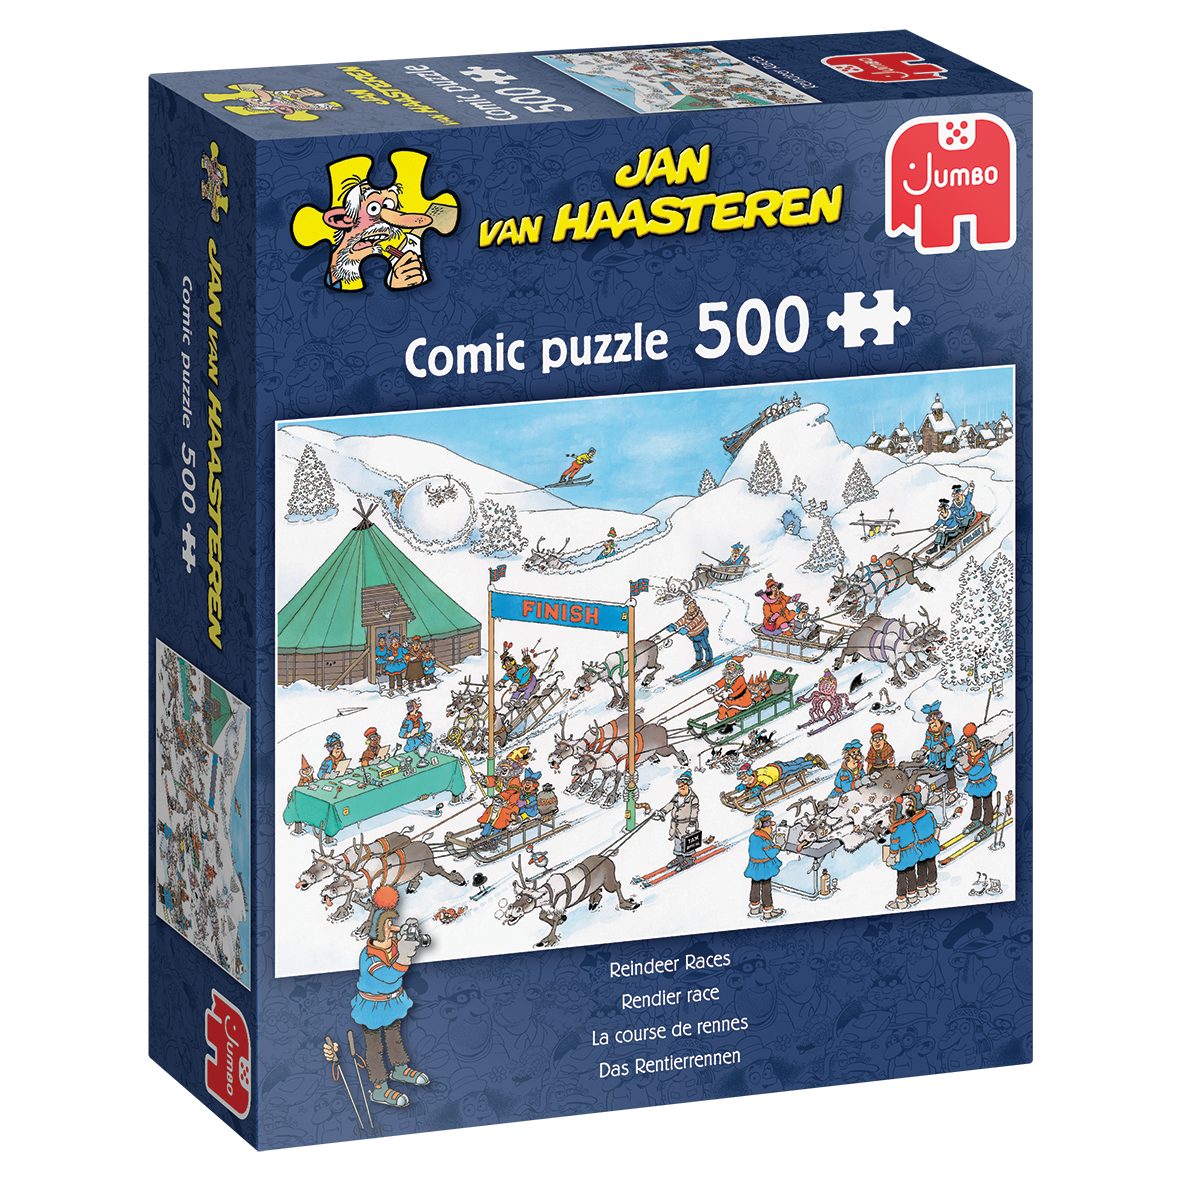 Jumbo Spiele Puzzle Jan van Haasteren Das Rentierrennen, 500 Puzzleteile, Made in Europe